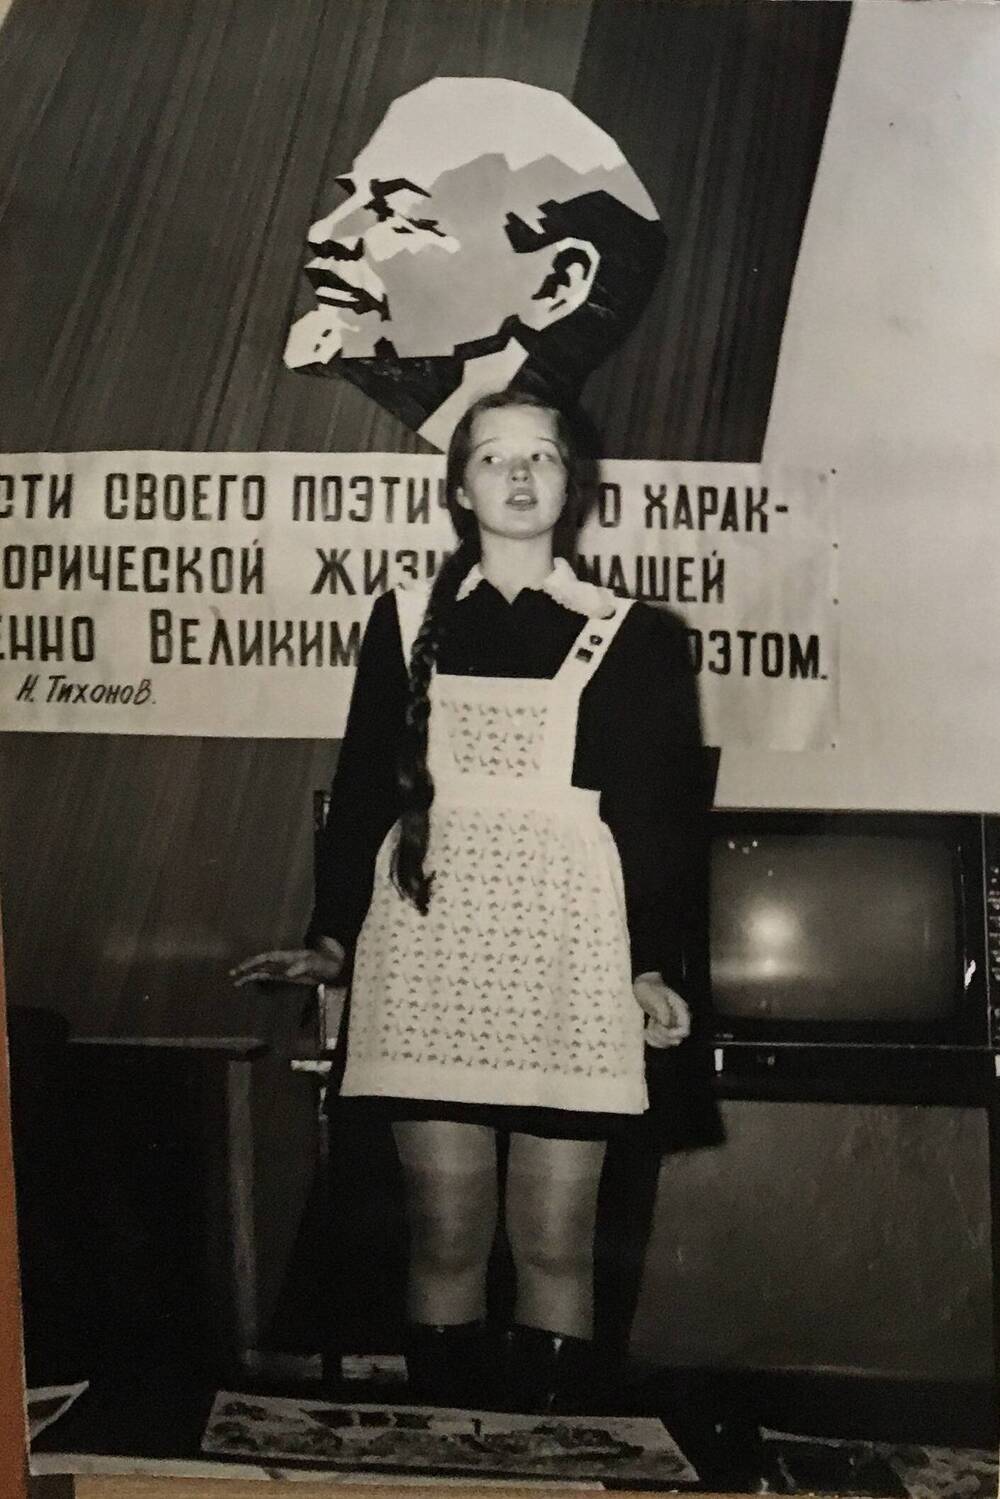 Фото черно-белое, вертикальное. На фото девушка в школьном черном платье и белом фартуке.